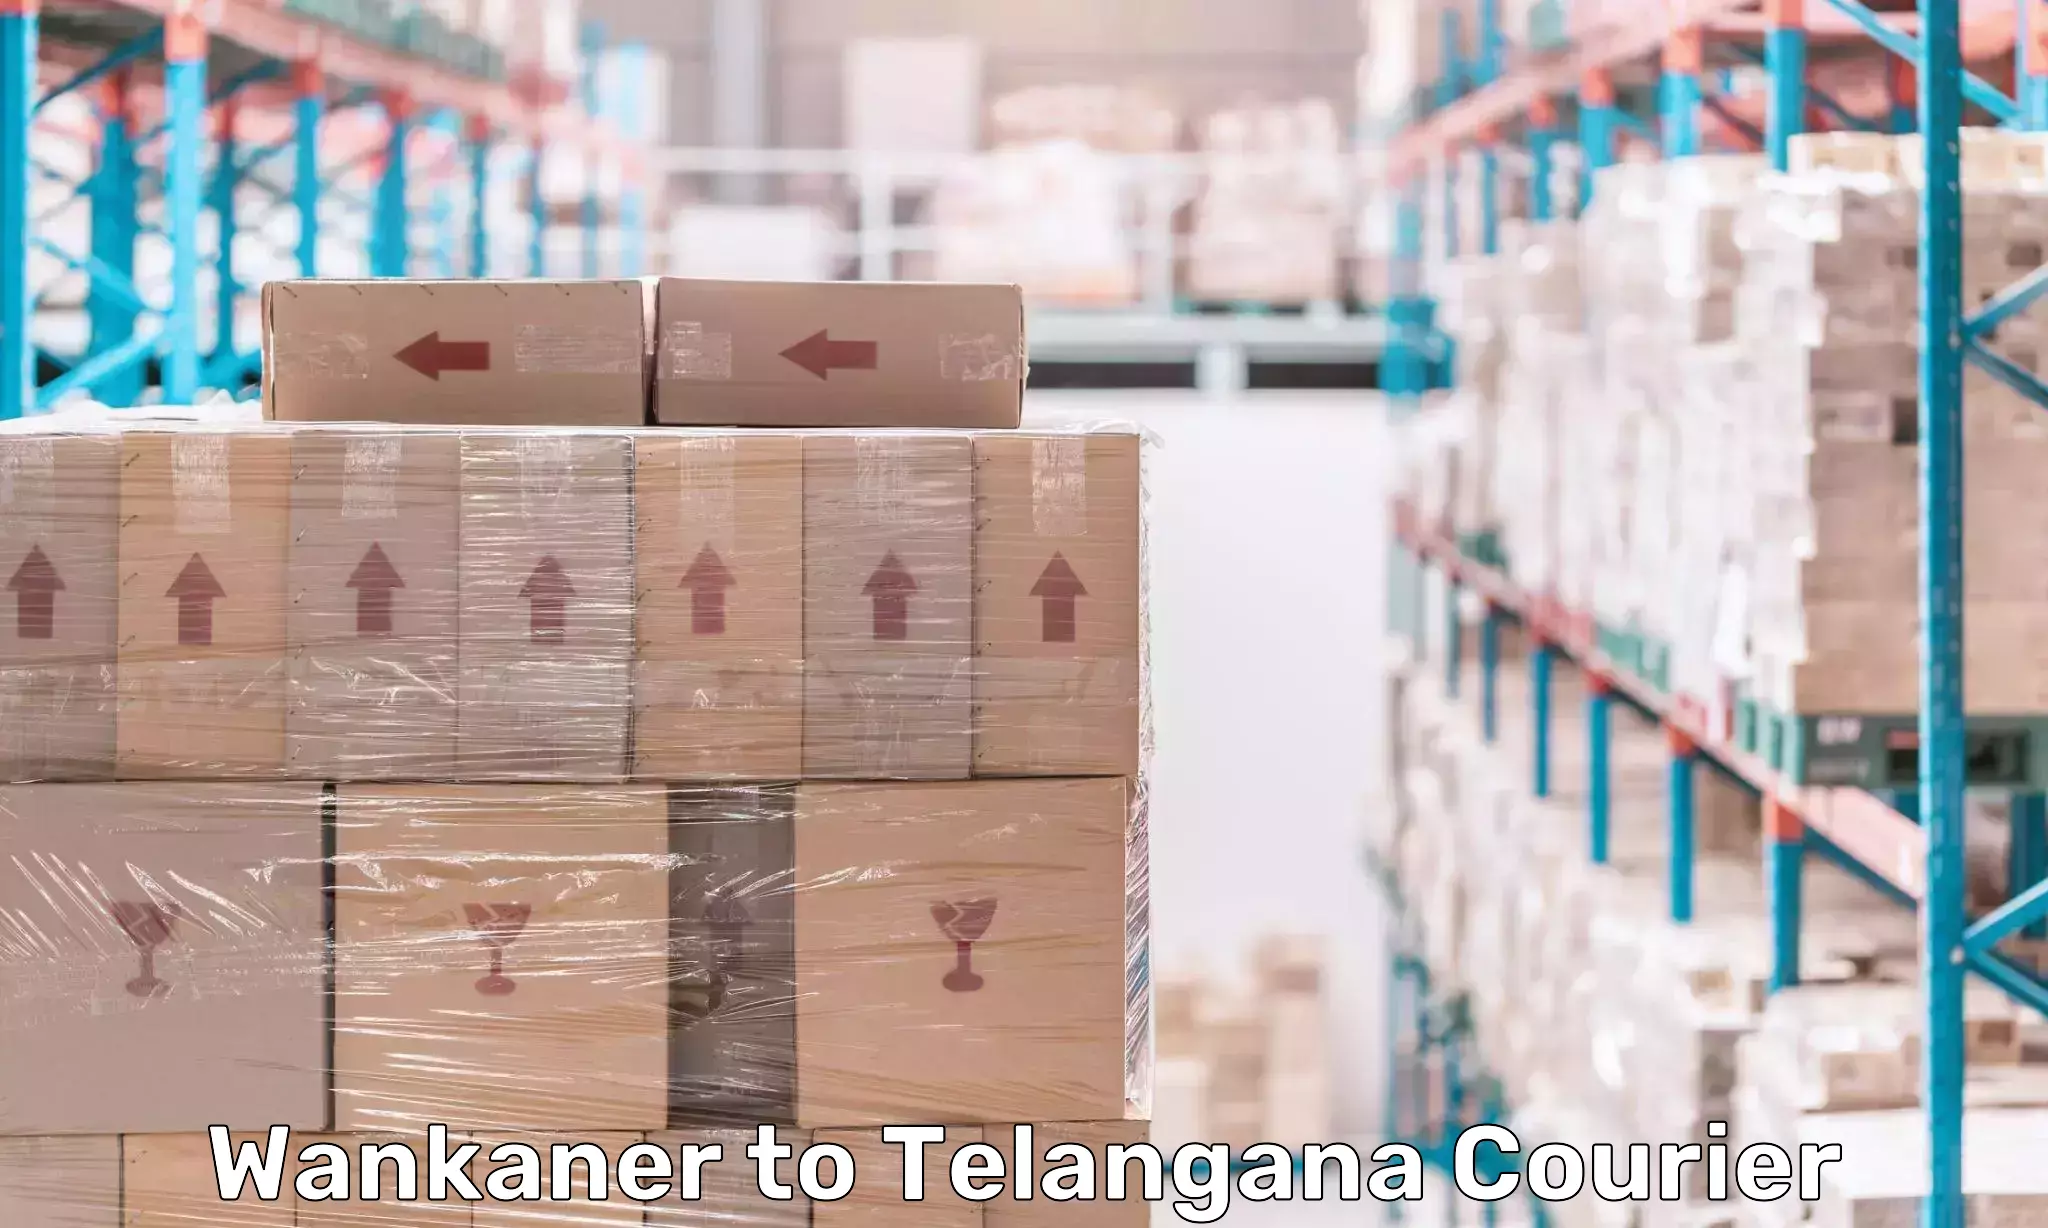 Express logistics providers Wankaner to Manthani